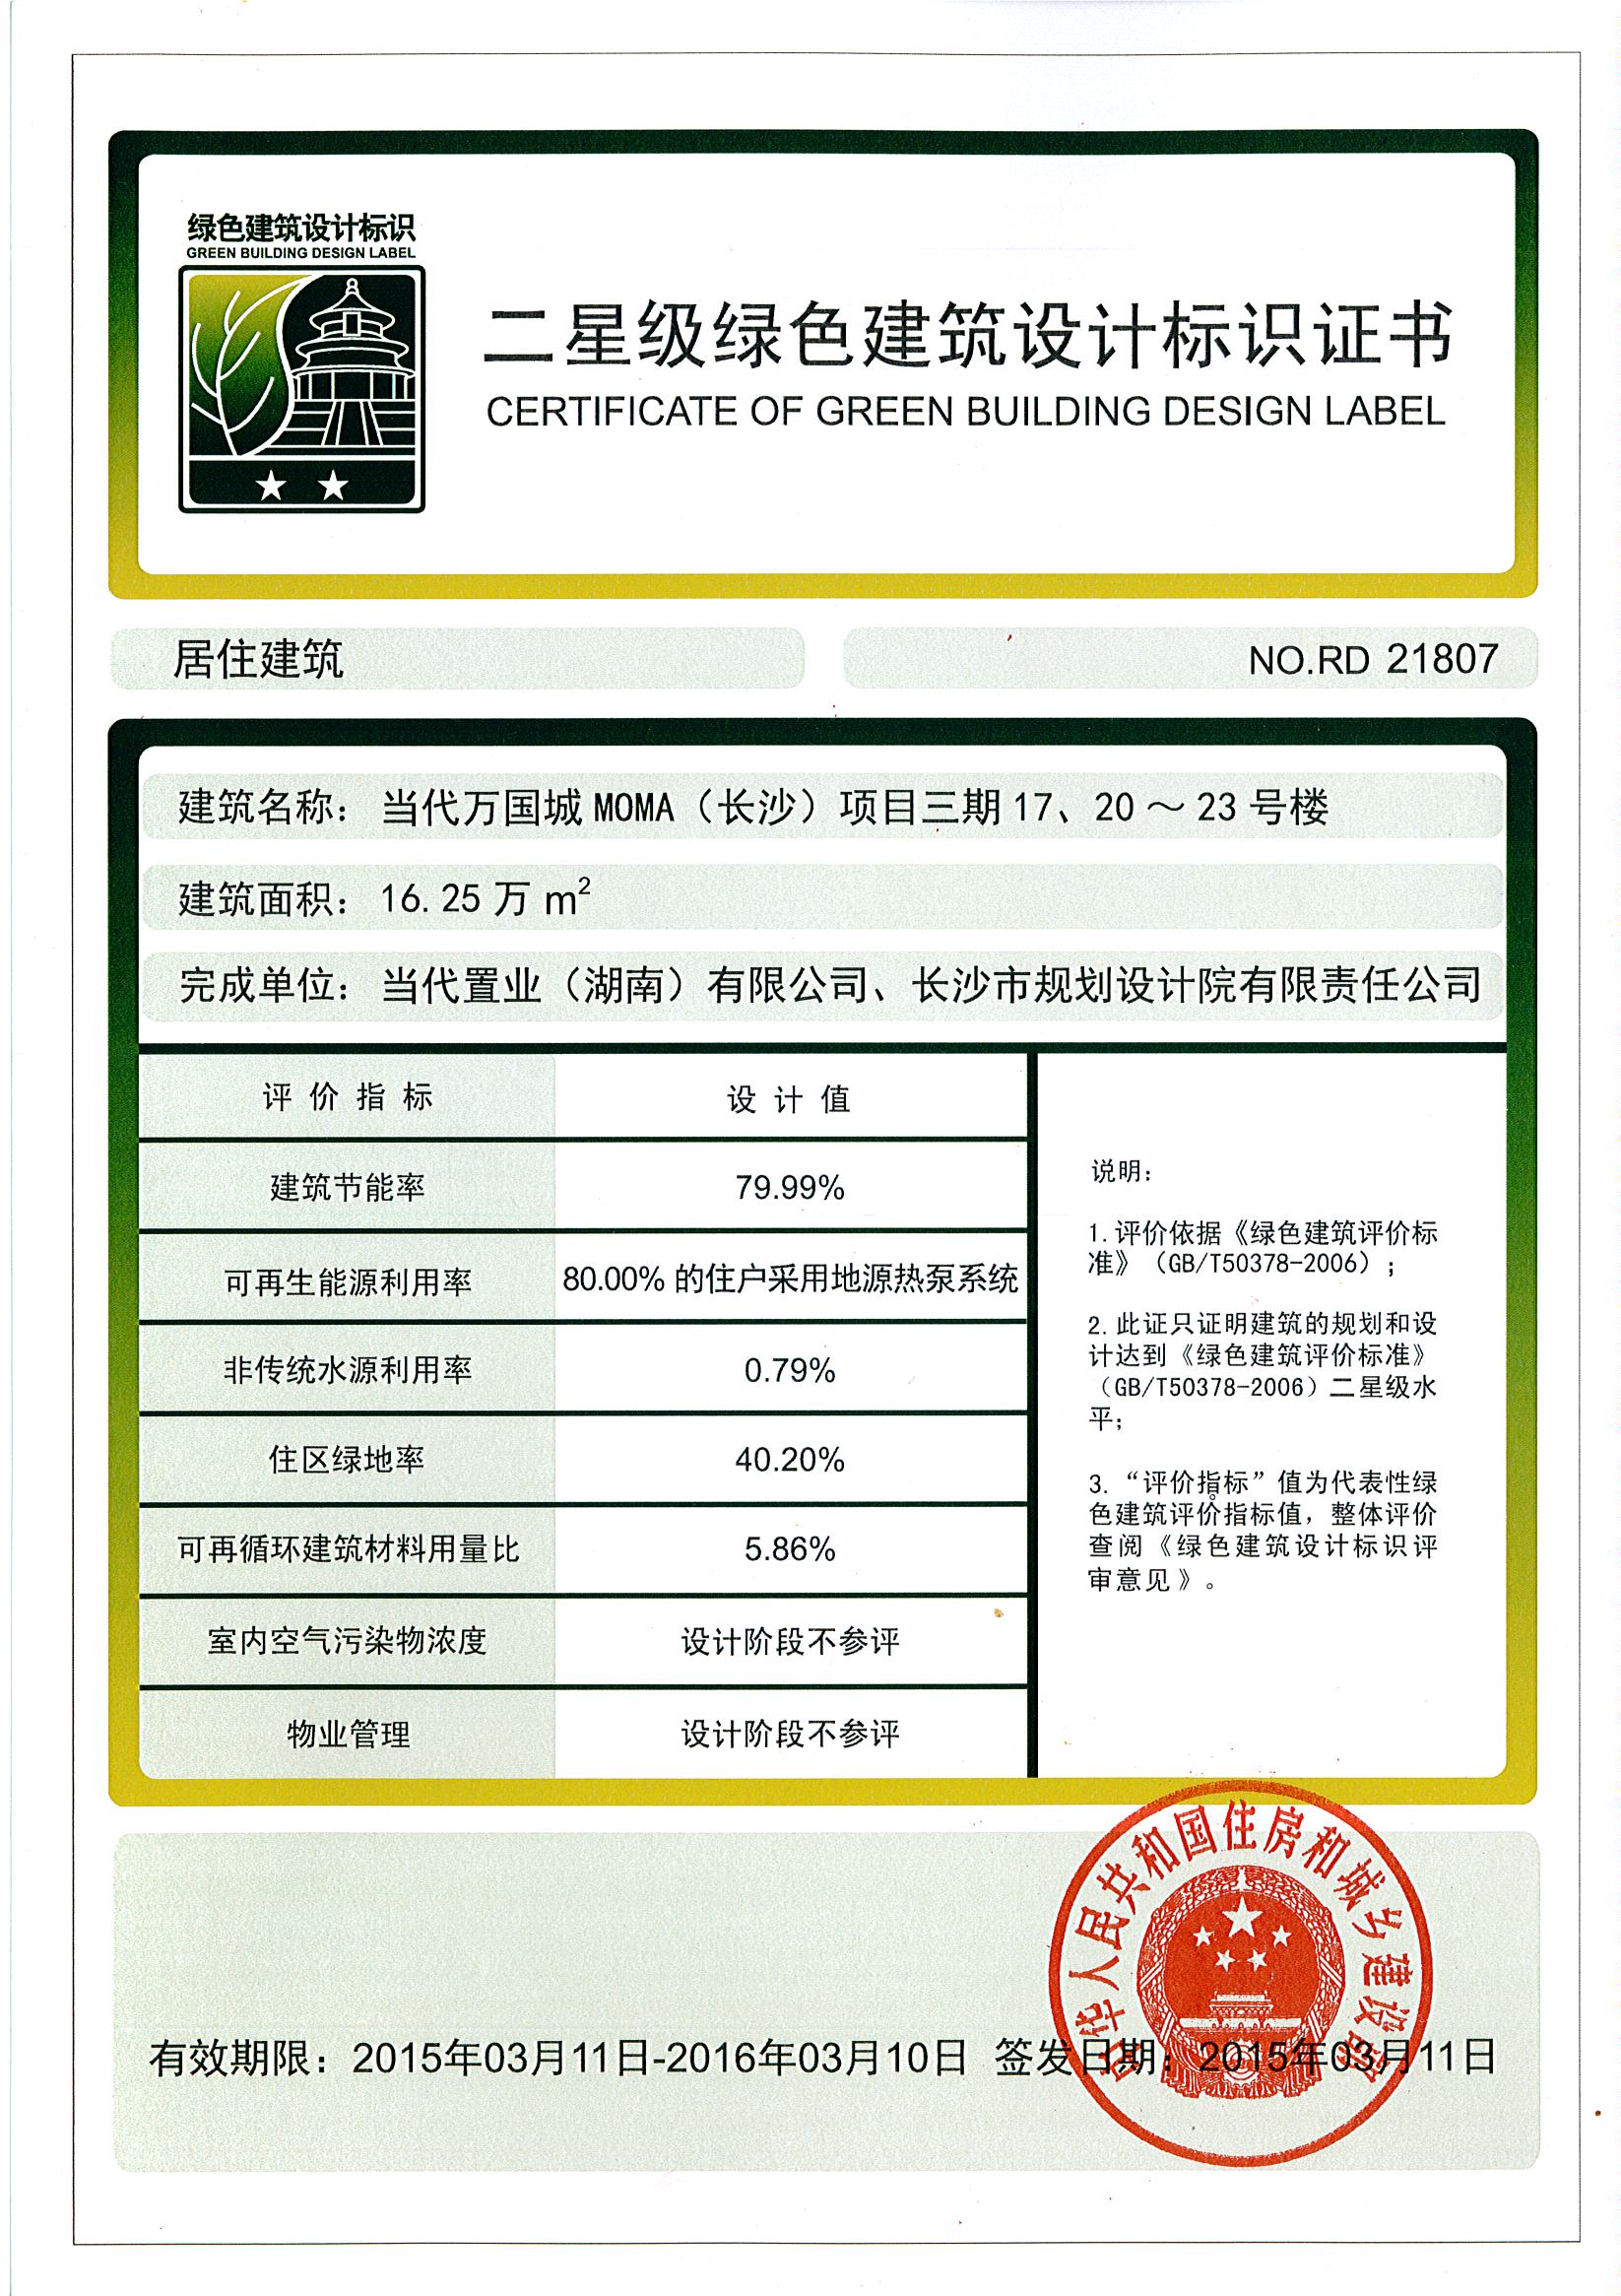 20150311 长沙开福项目三期17、20-23#栋绿建二星标识证书.jpg